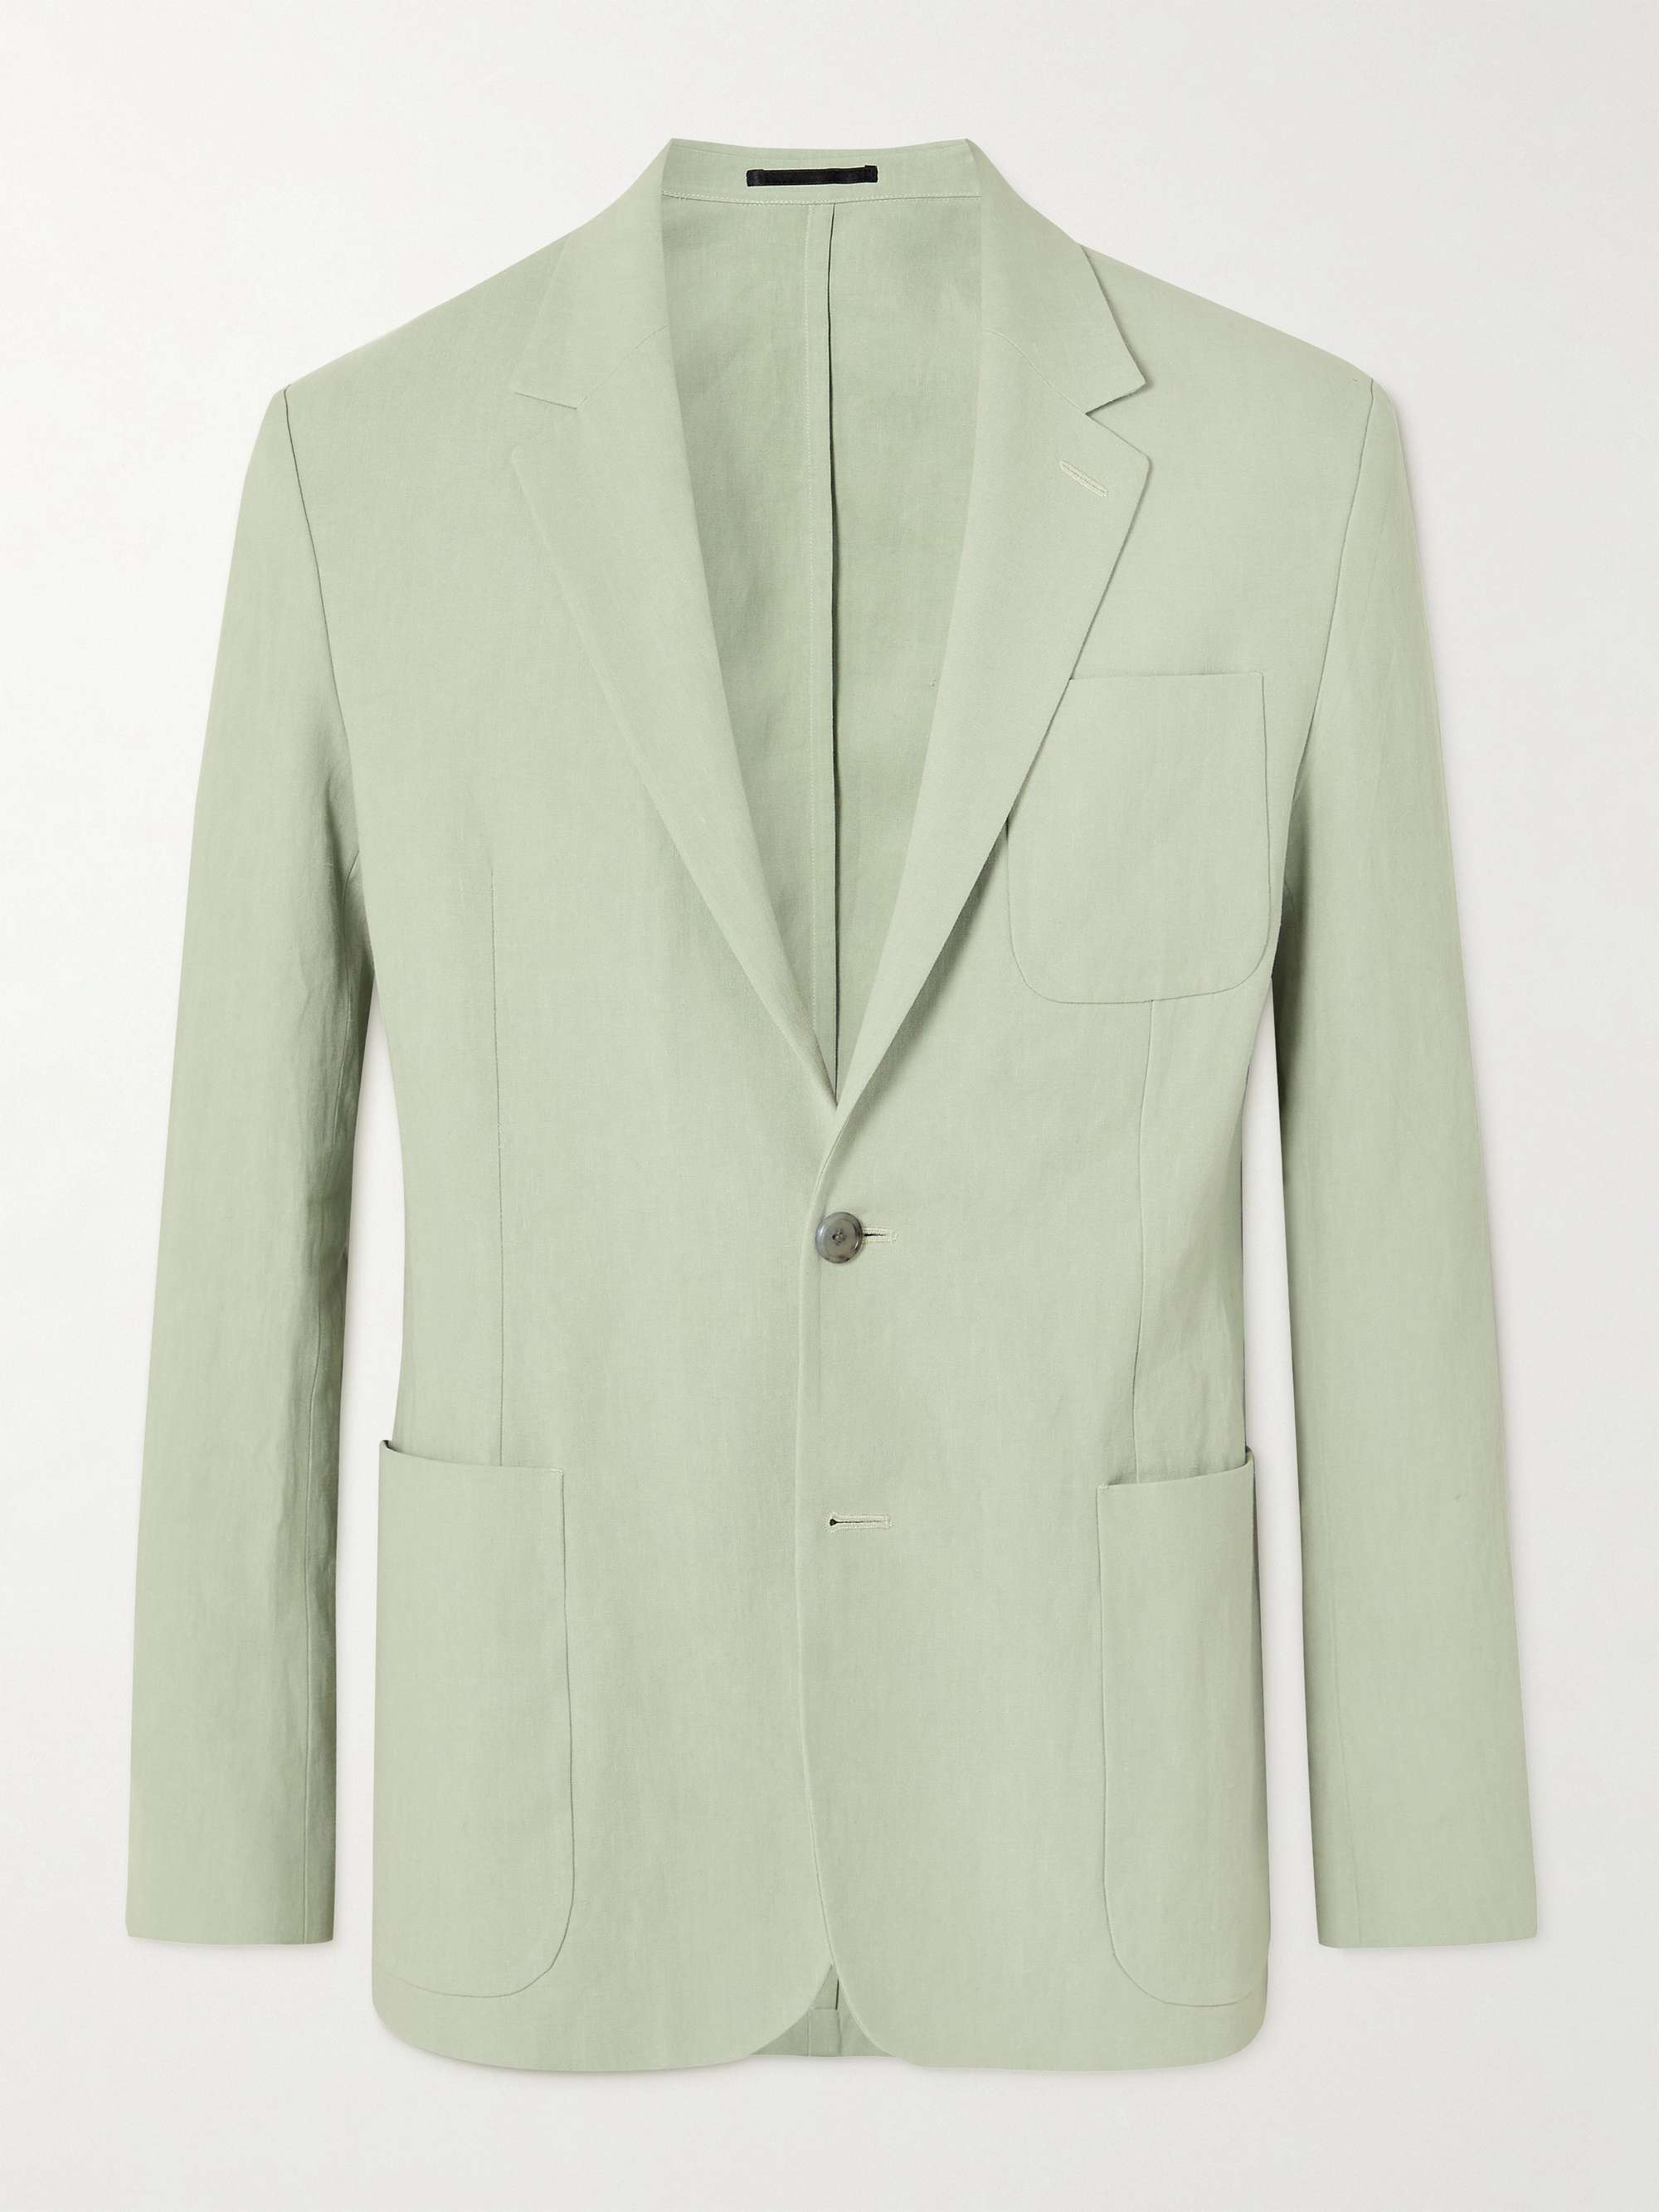 PAUL SMITH Linen Suit Jacket